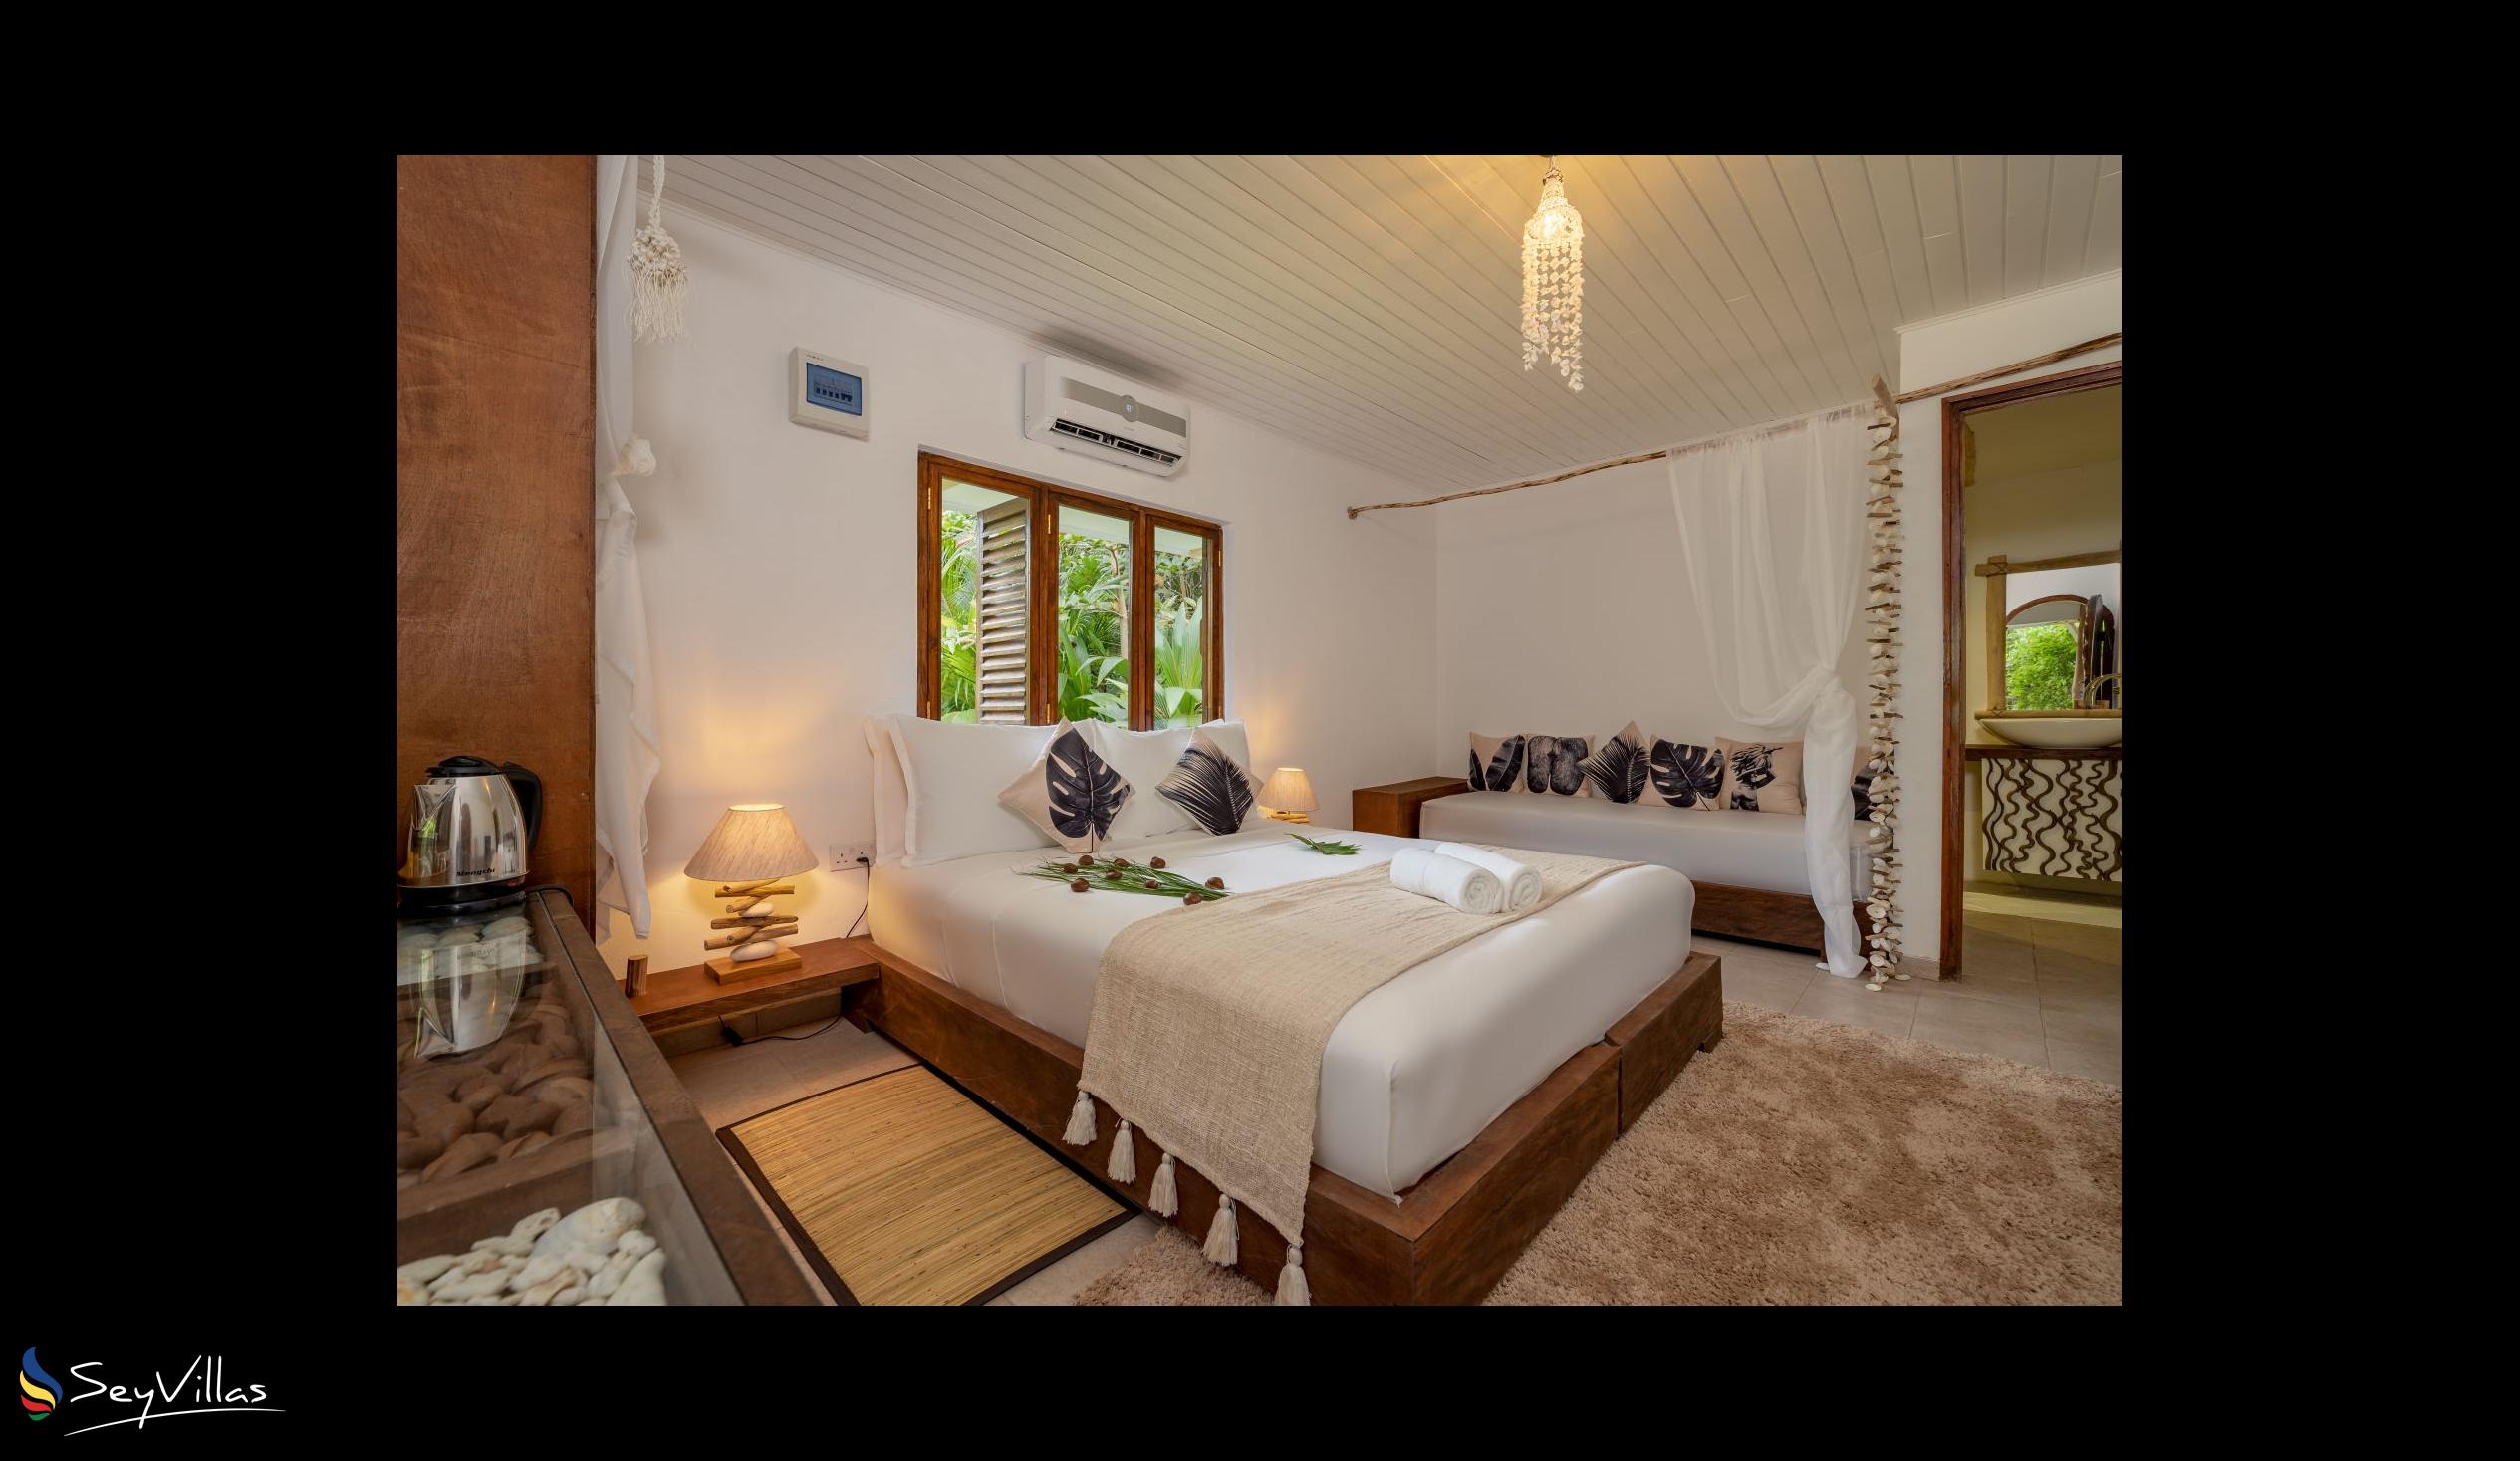 Photo 74: Bliss Hotel Praslin - Eden Garden - Family Suite - Praslin (Seychelles)